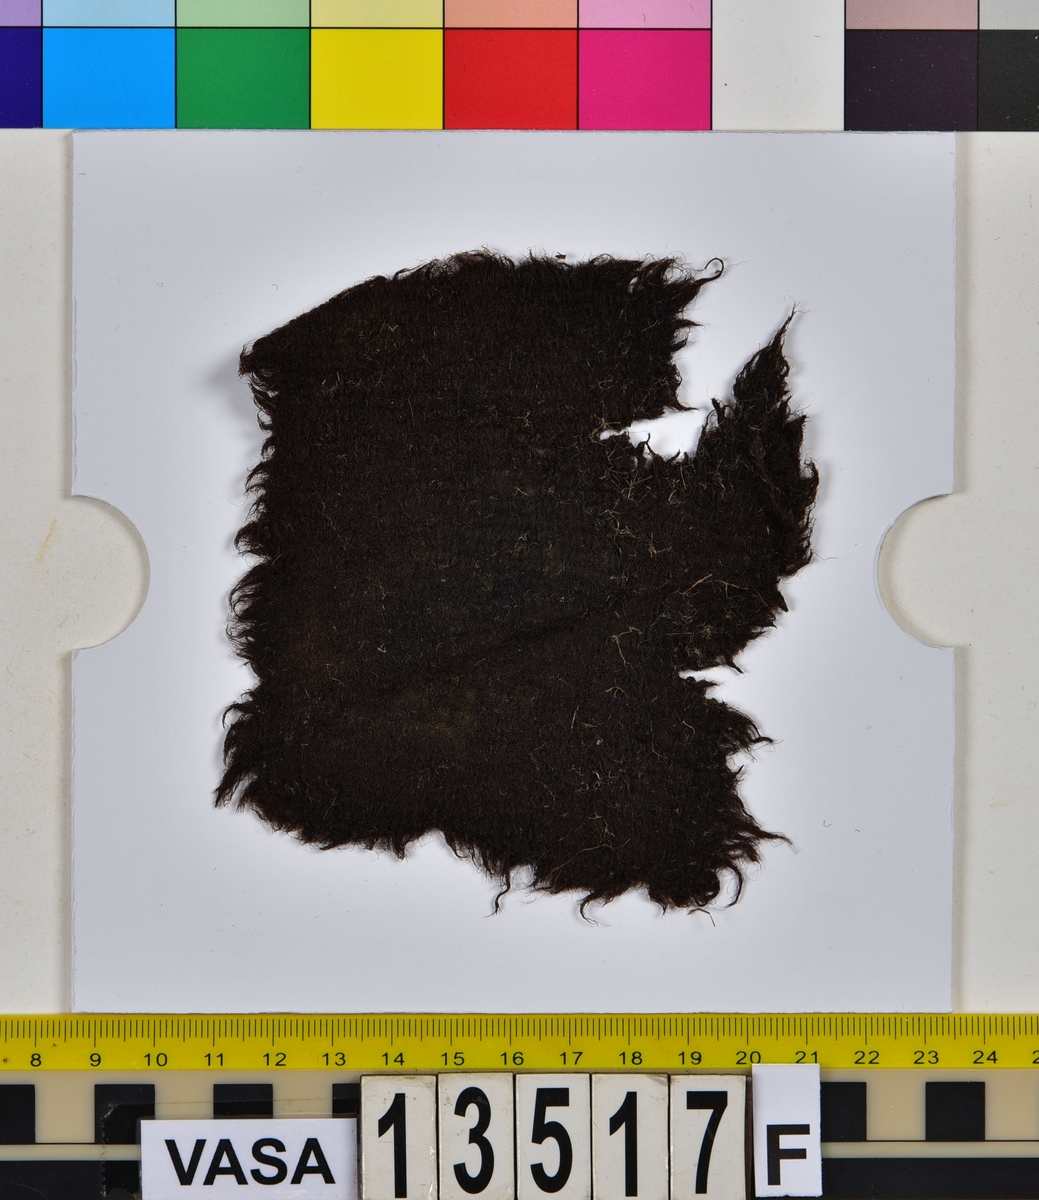 Textil.
20 textilfragment uppdelade på fyndnummer 13517a-j.
Fnr 13517a består av två fragment av ull vävda i tuskaft. Det mindre fragmentet är trekantigt, har varit valkat på insidan och har fållar med sömmar kvar. Det stora fragmentet har två bevarade originalkanter.
Fnr 13517b består av två fragment av ull vävda i 2/1-kypert.
Fnr 13517c består av två fragment av ull vävda i tuskaft. Det större fragmentet har ett hål i mitten. De är svarta av tjära och har troligen varit en del av en becksudd.
Fnr 13517d består av ett fragment av ull vävt i 2/1-kypert.
Fnr 13517e består av ett fragment av ull vävt i 2/2-kypert.
Fnr 13517f består av ett fragment av ull vävt i tuskaft.
Fnr 13517g består av 6 fragment av ull vävda i tuskaft. Två av fragmenten ser ut att ha varit valkade på ena sidan. Tre av fragmenten har vissa originalkanter eller -fållar kvar.
Fnr 13517h består av ett fragment av ull vävt i tuskaft.
Fnr 13517i består av 3 fragment av ull vävda i tuskaft. Fragmenten kan ha varit valkade på ena sidan. Ett fragment är ljusare i färgen än de andra.
Fnr 13517j består av ett filtat fragment av ull eller bäver. I en av kanterna finns hål efter en söm.






TEXTILDOKUMENTATION 2018:

Fyndnummer: 13517c
Kontextgrupp: HS5
Typnummer: HS5.1:1 (till höger i bild)

Fragment i tuskaftsvävd ull och ruggad/valkad med en mycket tät lugg. Fragmentet är rektangulärt, har uppfransade kanter och ett spikhål i mitten (3-4 mm). I mitten på ena sidan finns ett vagt fyrkantigt avtryck (28 x 25 mm) och på andra sidan ett ovalt avtryck (35x47 mm). Dessa avtryck är troligtvis efter en fyrkantig läderbit och ett runt skaft vilket talar för att detta fragment har tillhört en becksudd. Tyget har veckats och brustit mot avtrycket. Fragmentet har synliga rester av tjära/beck samt bastfiber som ligger ovanpå. Fragmentet är relativt mjukt.

TEKNIK
Trådsystem 1
Trådtäthet (tr/cm): 8
Garn nr: 1
Fibermaterial: ull
Garngrovlek (mm): 0,77-1,01 
Antal trådar: 1
Spinnriktning: Z
Spinnvinkel (grader): 15,79-29,62 
Färg: mörkbrun originalfärg okänd

Trådsystem 2
Trådtäthet (tr/cm): 8
Garn nr: 2
Fibermaterial: ull
Garngrovlek (mm): 0,67-0,87 
Antal trådar: 1
Spinnriktning: S
Spinnvinkel (grader): 14,19-30,56 
Färg: mörkbrun originalfärg okänd




Fyndnummer: 13517c
Kontextgrupp: HS5
Typnummer: HS5.2:1 (till vänster i bild)

Fragment i ull, vävt i 2/2 kypert och tuskaft (4 skaft). Fragmentet har vridit och vikt sig så att de z-spunna respektive de s-spunna trådarna ser ut att tillhöra olika trådsystem. Detta är på grund av vridningen och i själva verket är det en fram- och en baksida man ser. Stora mängder långa bastfibrer sitter invirade i fragmentet, liksom en sten. På fragmentet finns även rester av vad som kan vara tjära eller beck.
I mikroskop har fibrerna en jämn, tydlig och intensiv svart färg. Att fibrerna är så pass jämna i färgen kan tyda på att de är färgade.

TEKNIK
Trådsystem 1
Trådtäthet (tr/cm): 9-10
Garn nr: 1
Fibermaterial: ull
Garngrovlek (mm): 0,61-1,01 
Antal trådar: 1
Spinnriktning: Z
Spinnvinkel (grader): 34,25-40,51 
Färg: svart

Trådsystem 2
Trådtäthet (tr/cm): 9-10
Garn nr: 2
Fibermaterial: ull
Garngrovlek (mm): 0,69-1,06
Antal trådar: 1
Spinnriktning: S
Spinnvinkel (grader): 21,78-28,09
Färg: svart